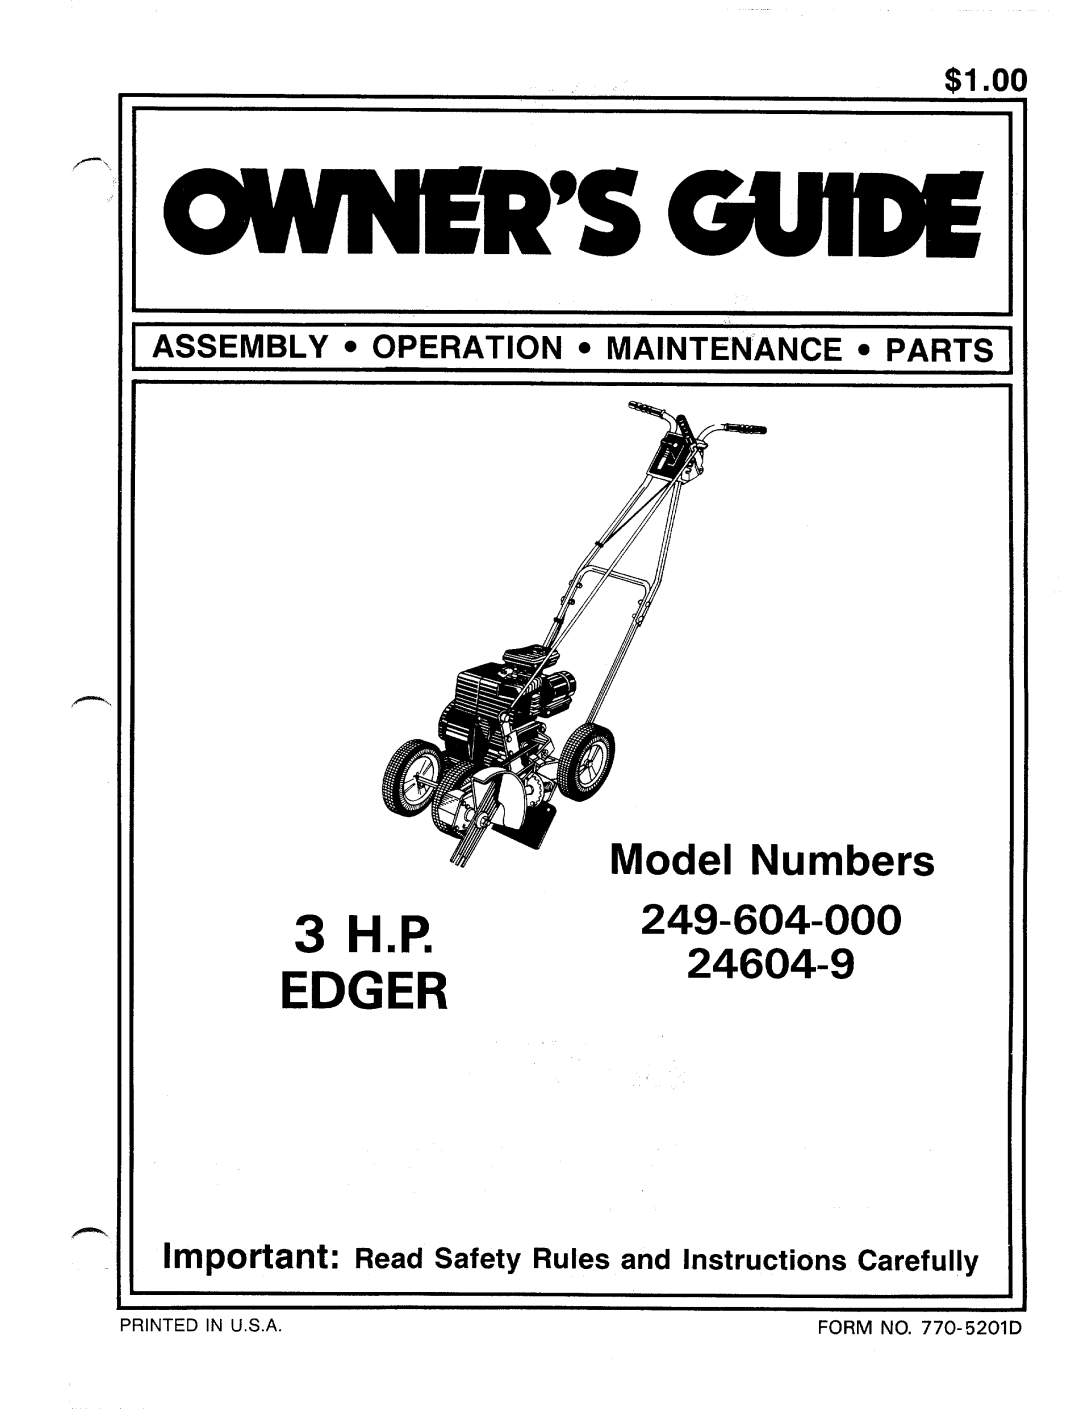 Bolens 24604-9, 249-604-000 manual 